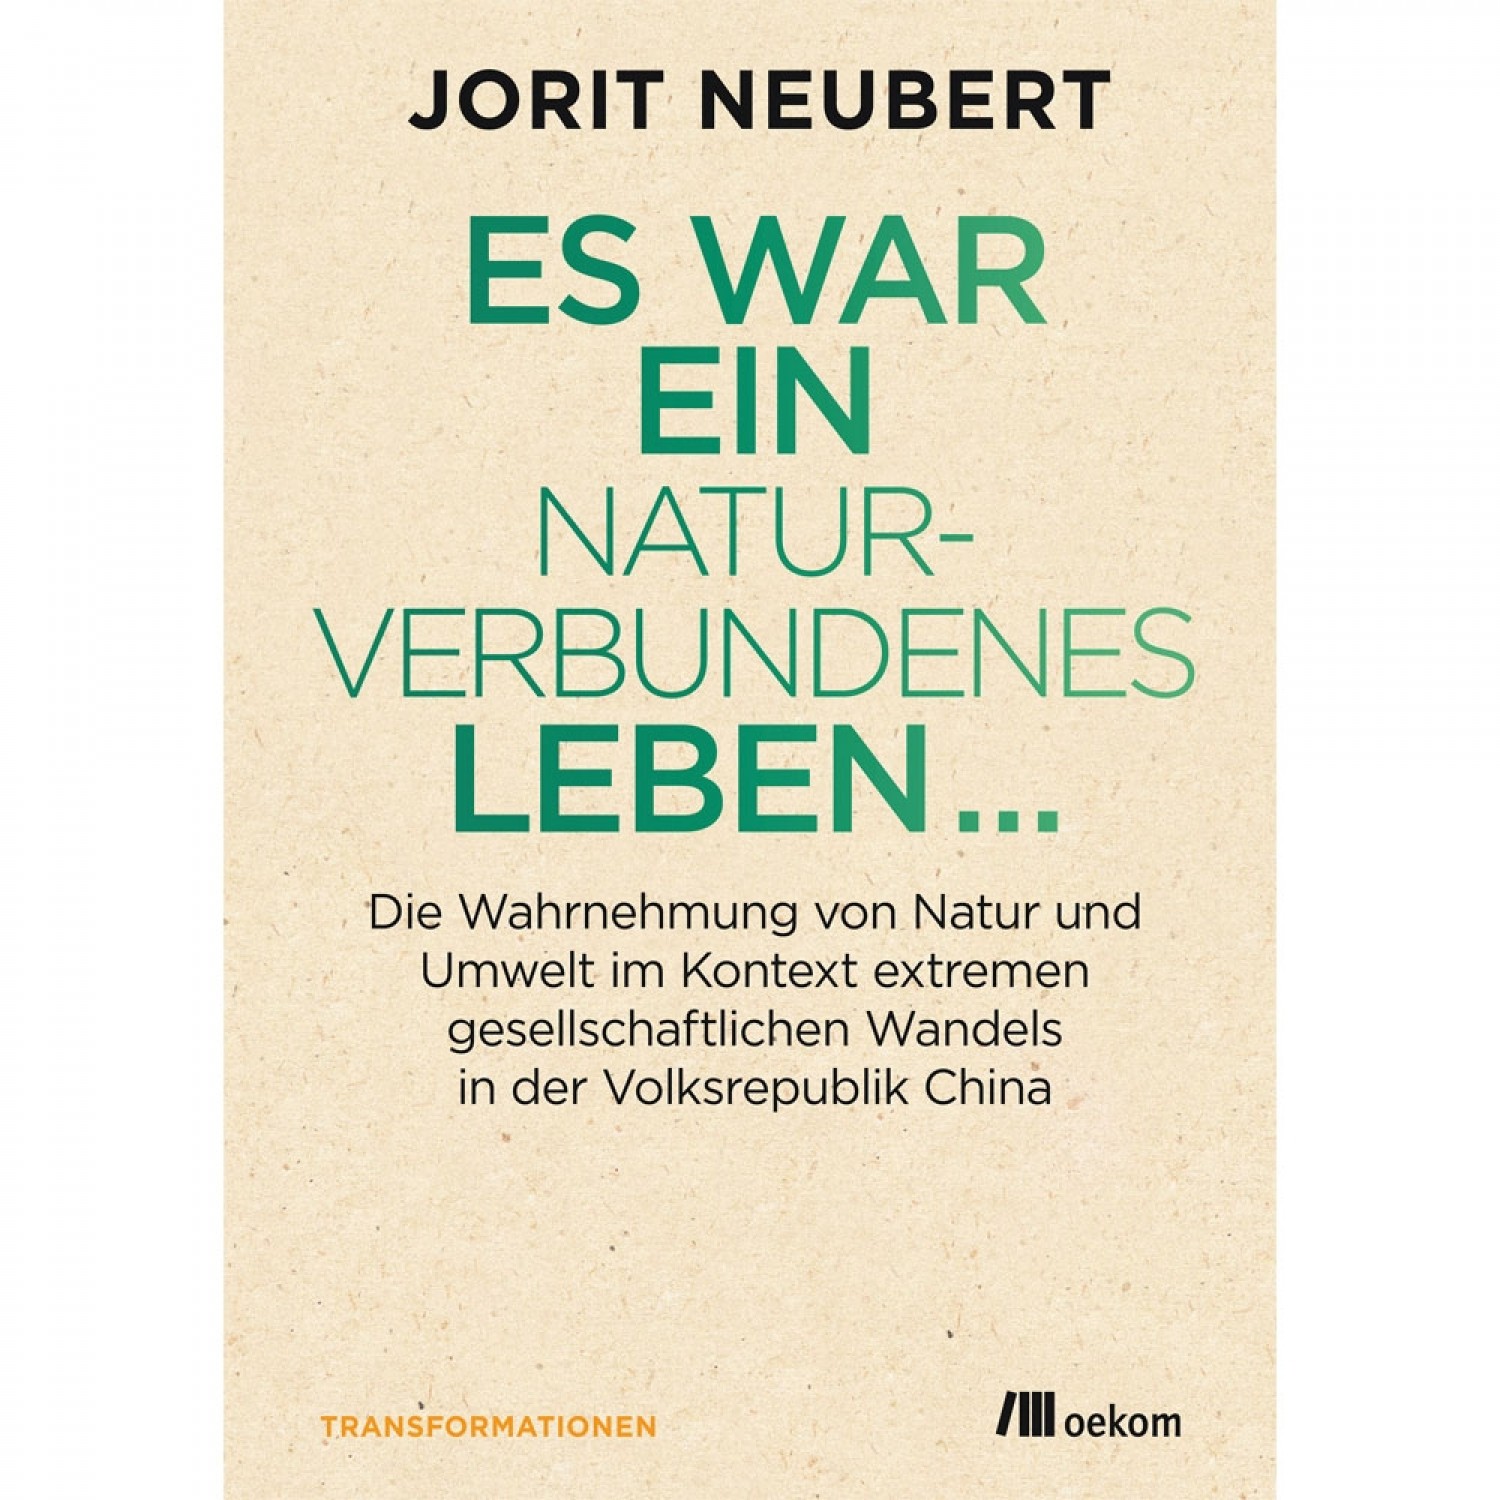 Es war ein naturverbundenes Leben - J. Neubert | oekom Verlag